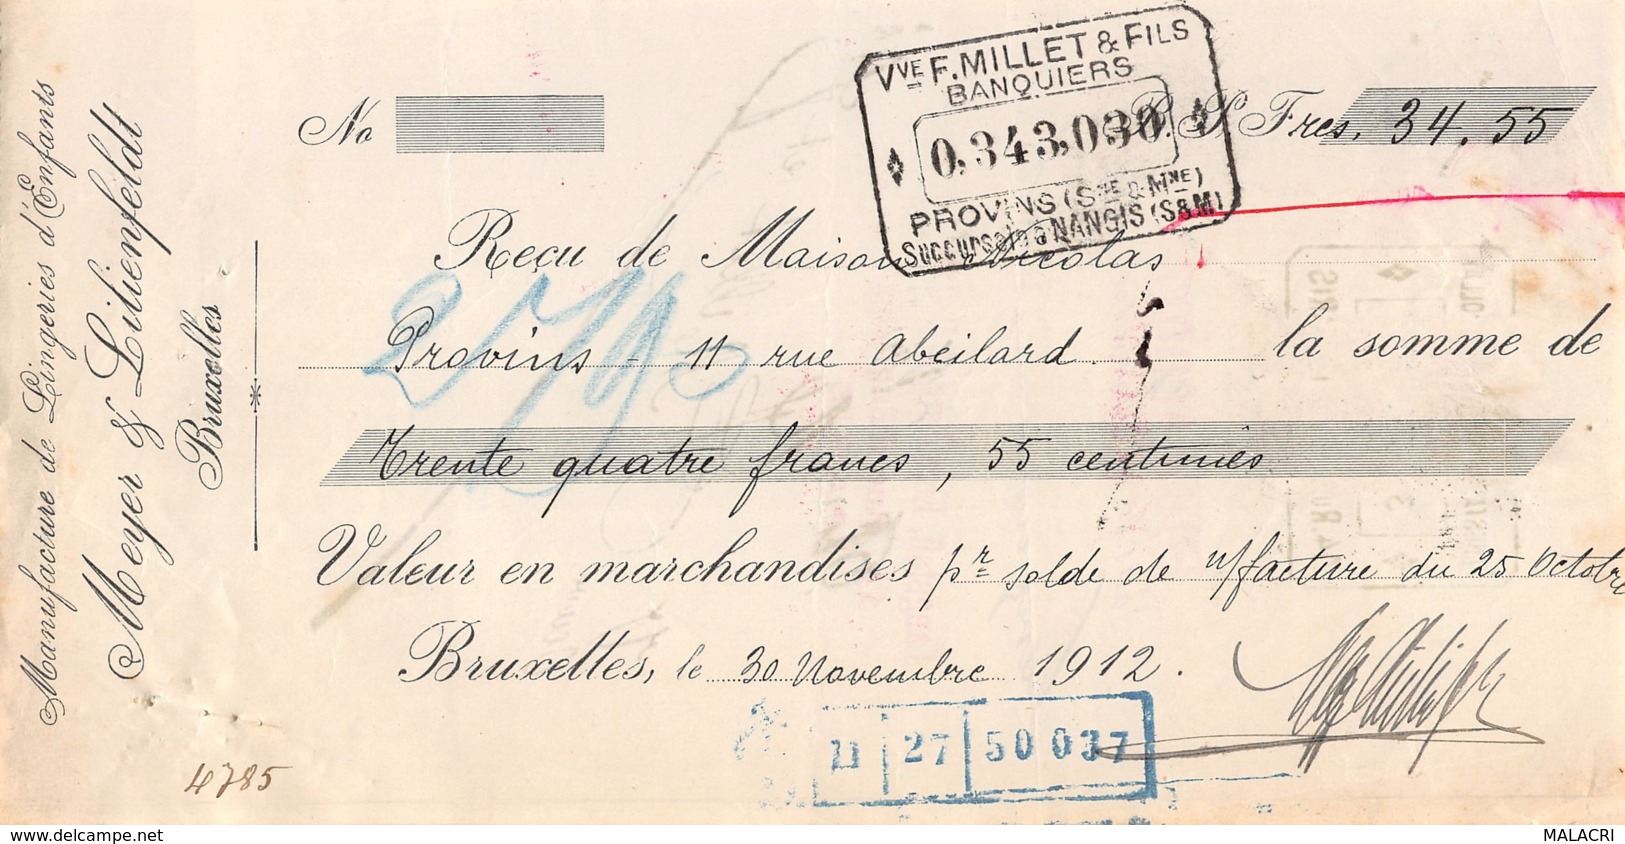 13   -0237   1912   MEYER & LILIENFELDT A BRUXELLES - MAISON NICOLAS A PROVINS-13   0237 - Bills Of Exchange